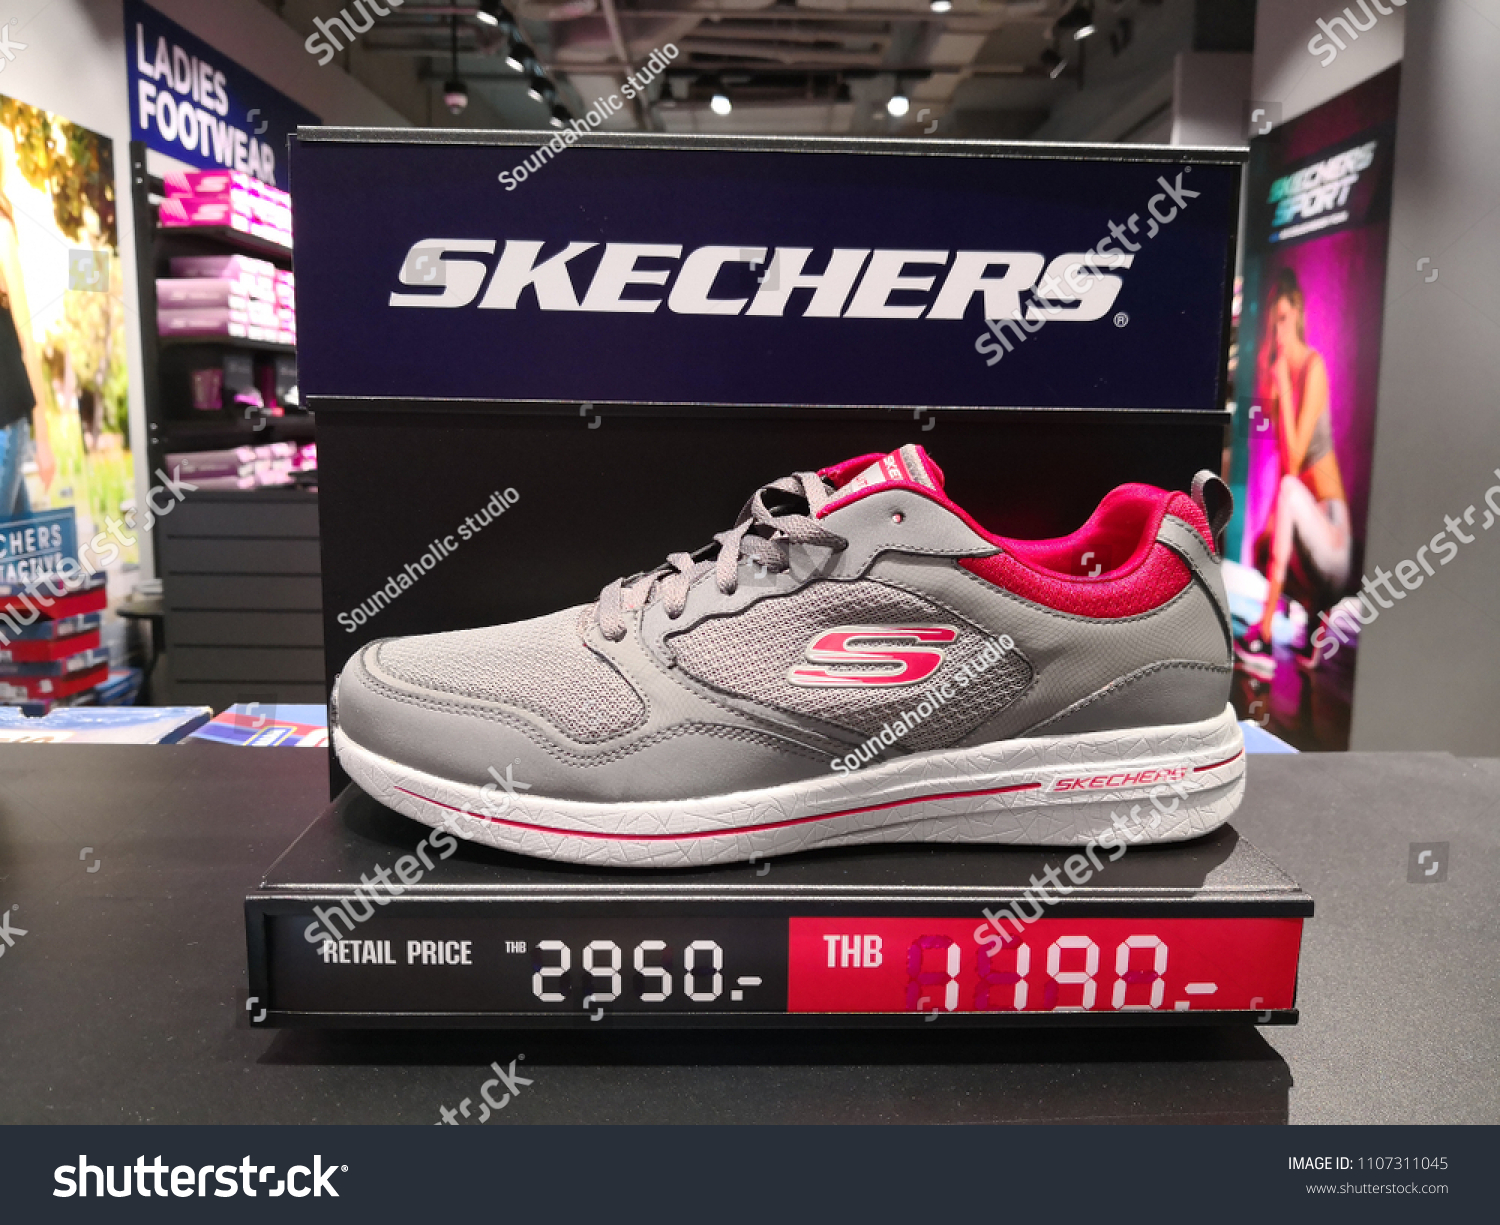 skechers shoes bangkok